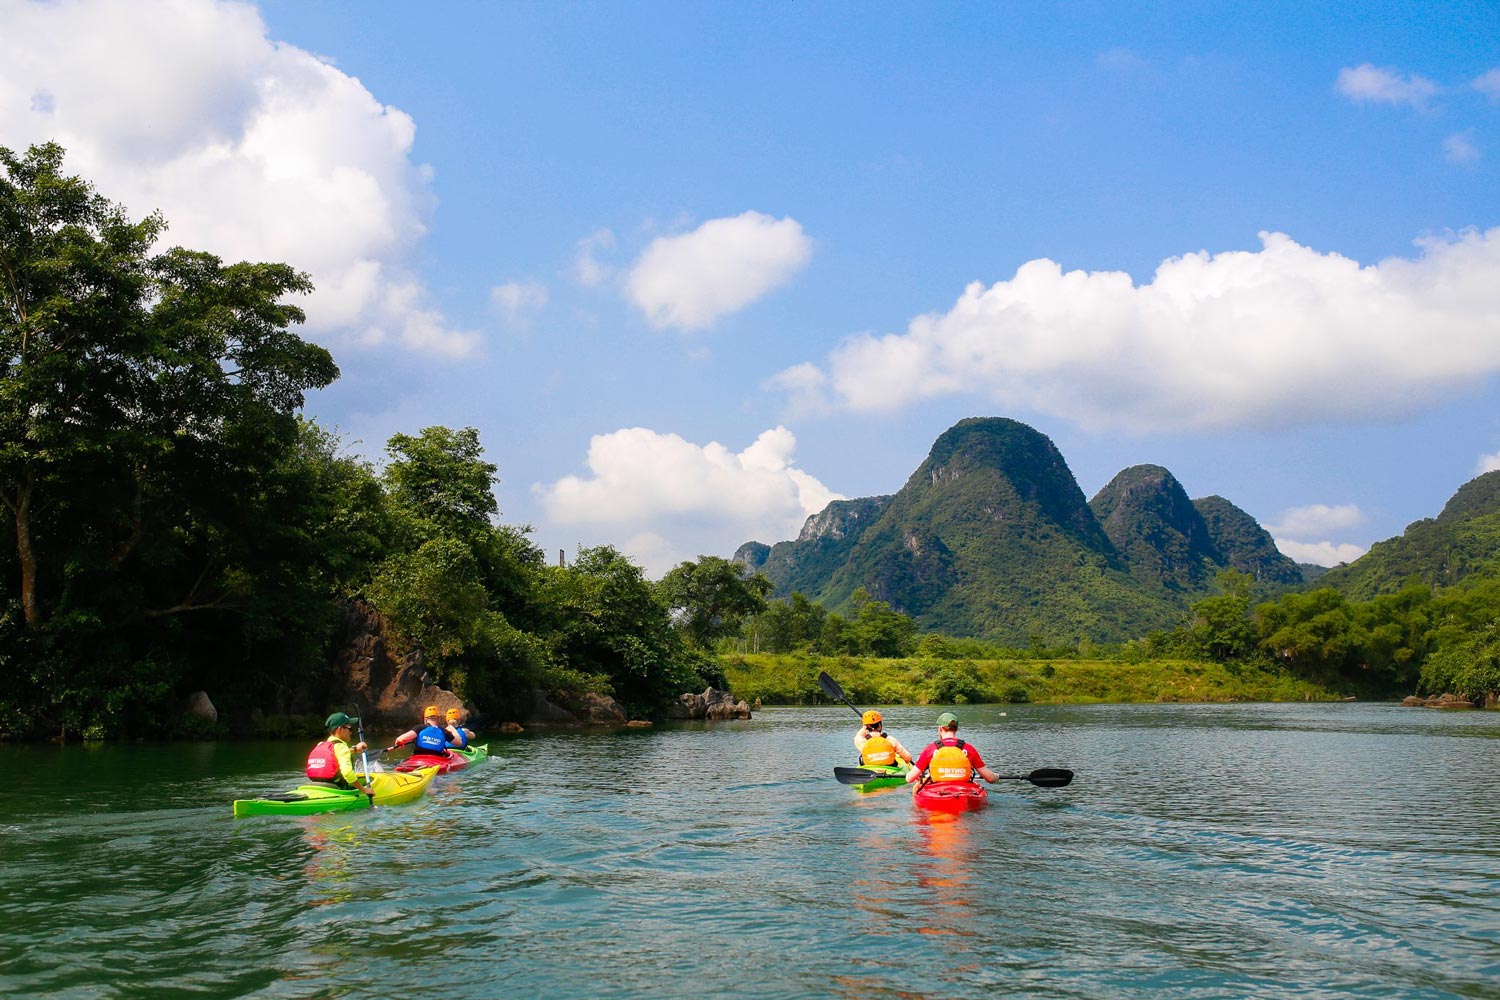 Chào kayak trên sông Chày, ngắm nhìn những dãy núi đá vôi hùng vĩ.